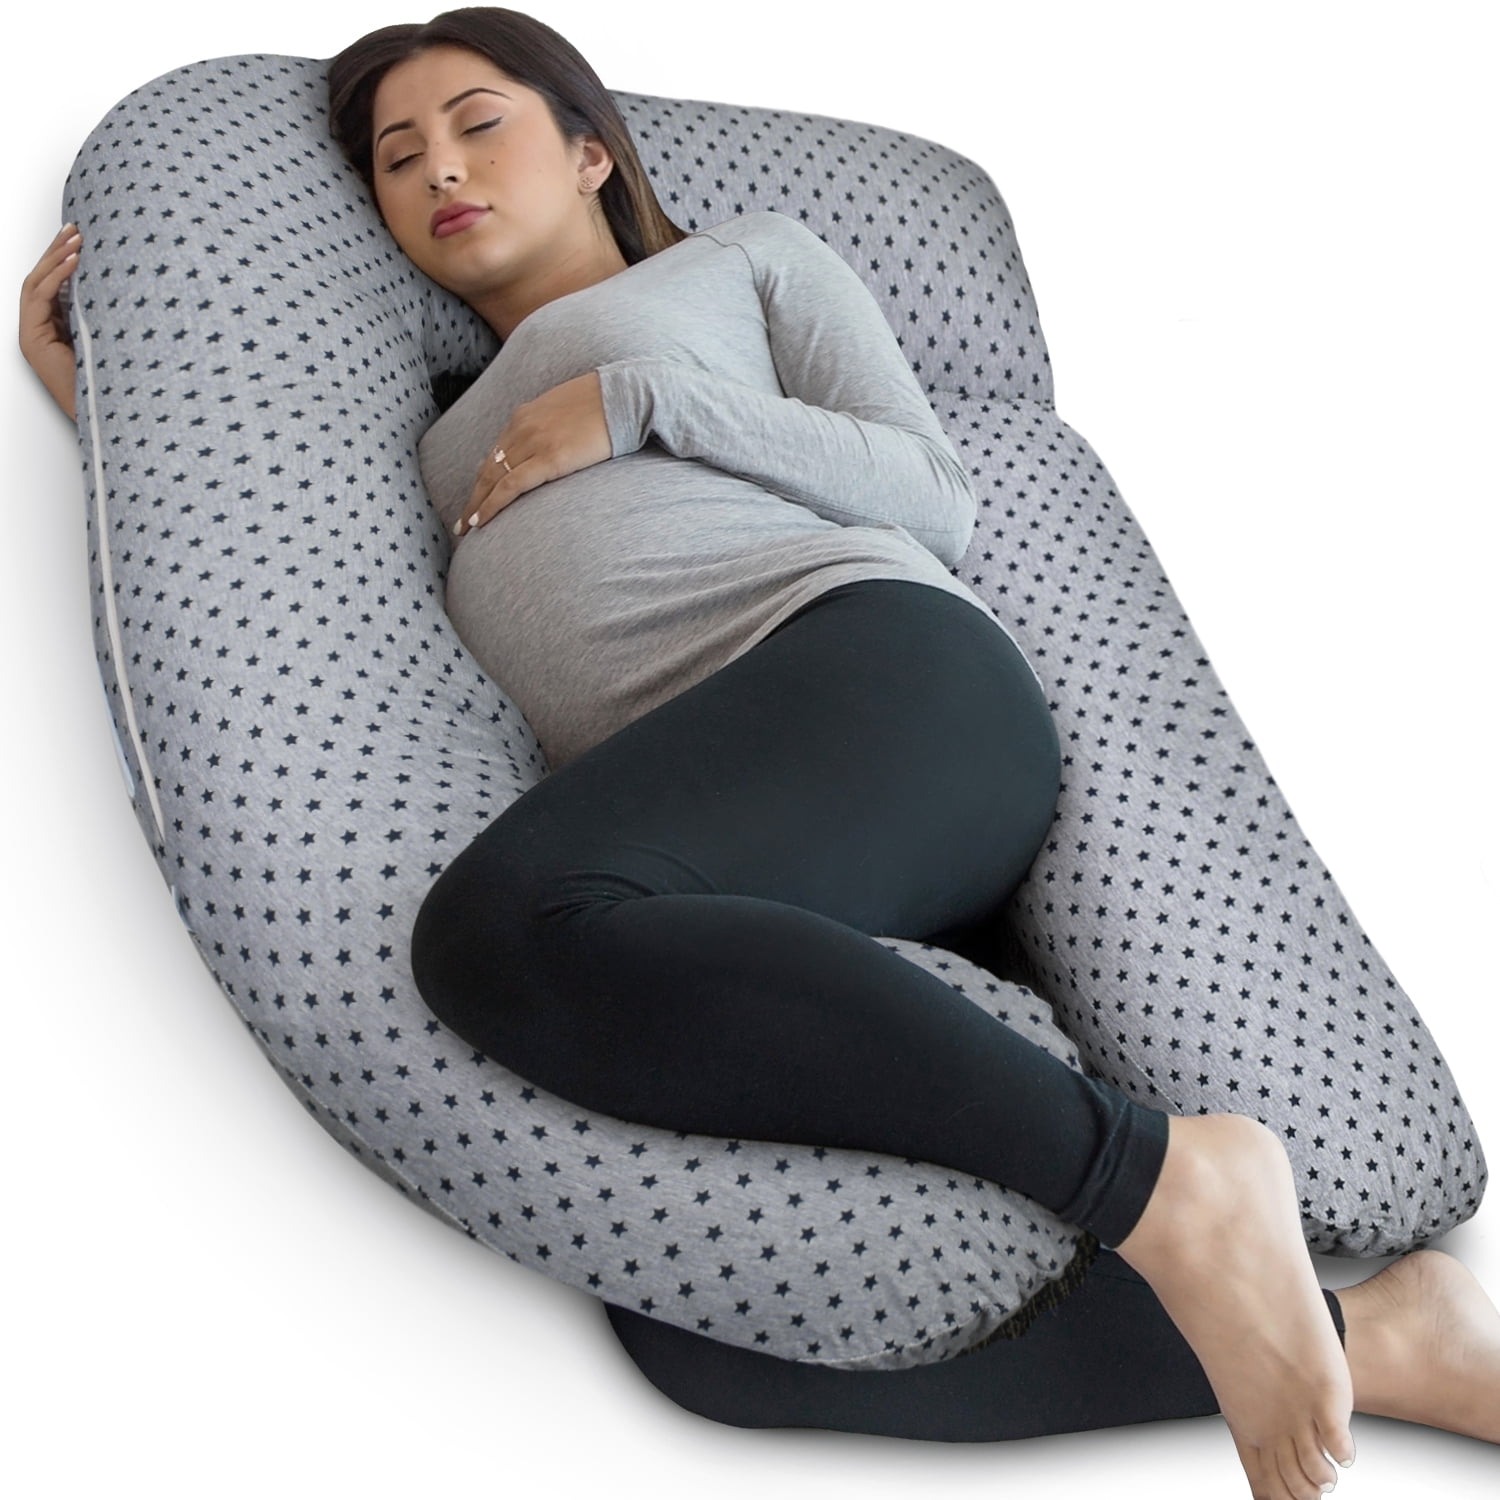 pregnancy pillow walmart